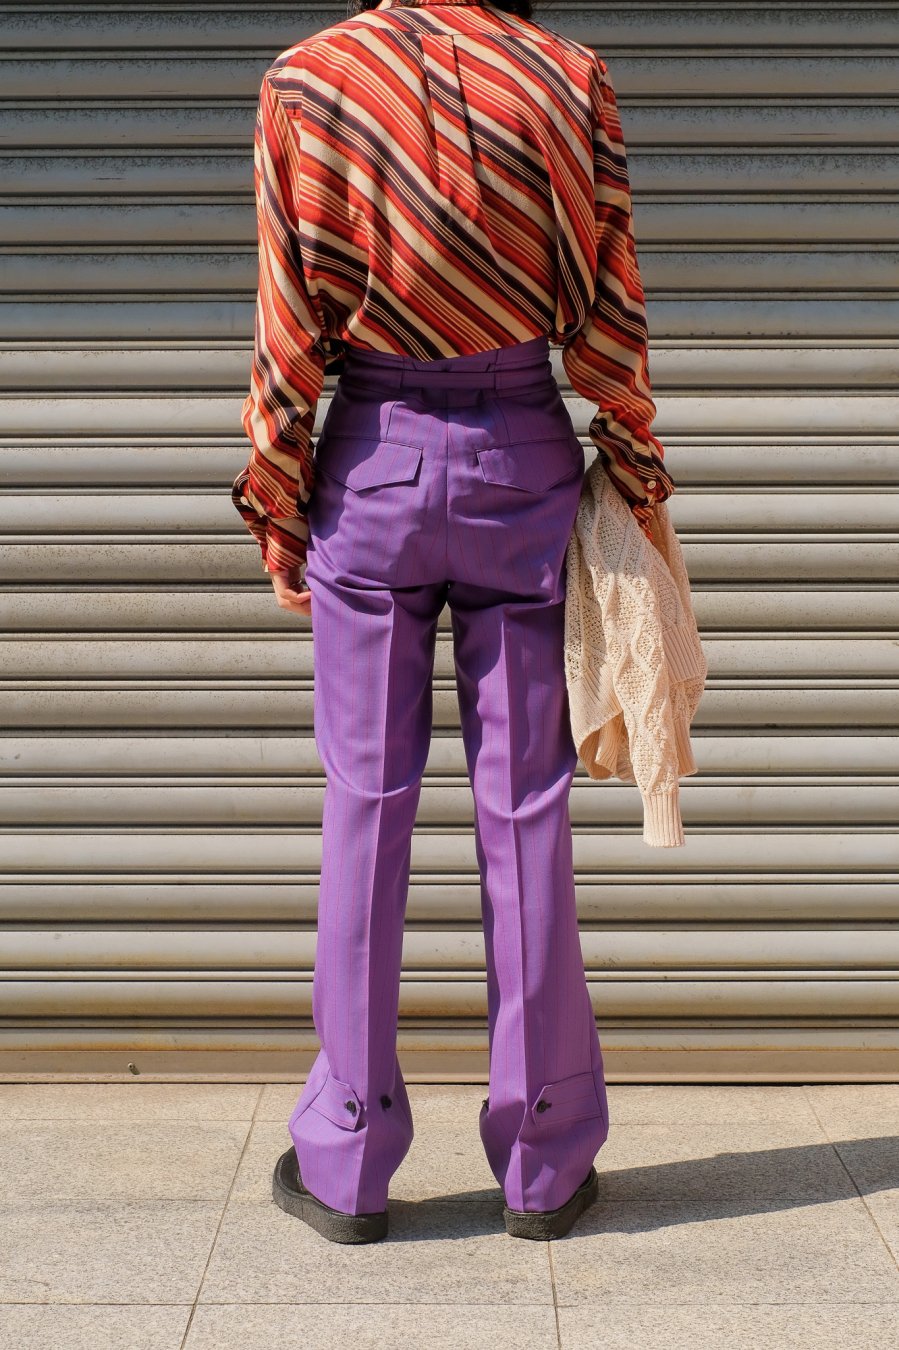 LITTLEBIG（リトルビッグ）のGurkha Trousers Purple（グルカトラウザーズ）の通販サイト-大阪 堀江 PALETTE art  alive（パレットアートアライヴ）-